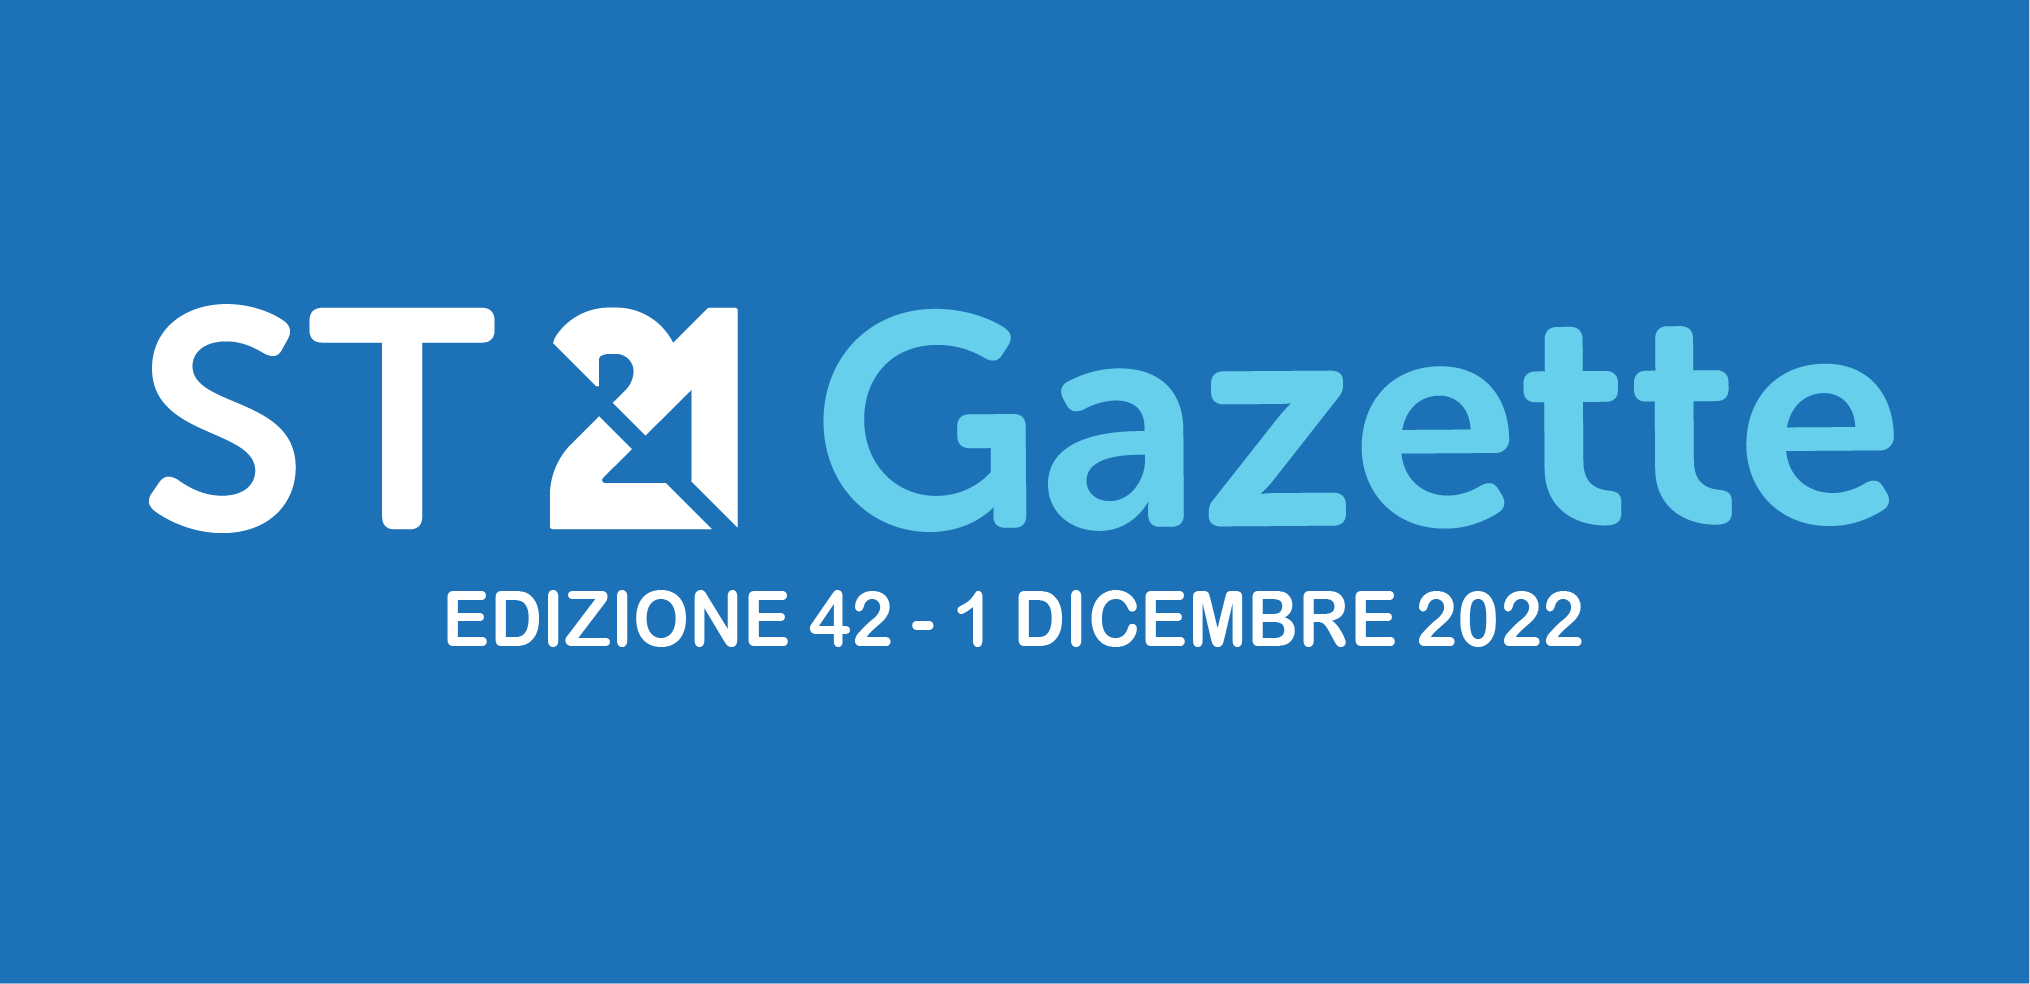 ST21 GAZETTE DICEMBRE 2022